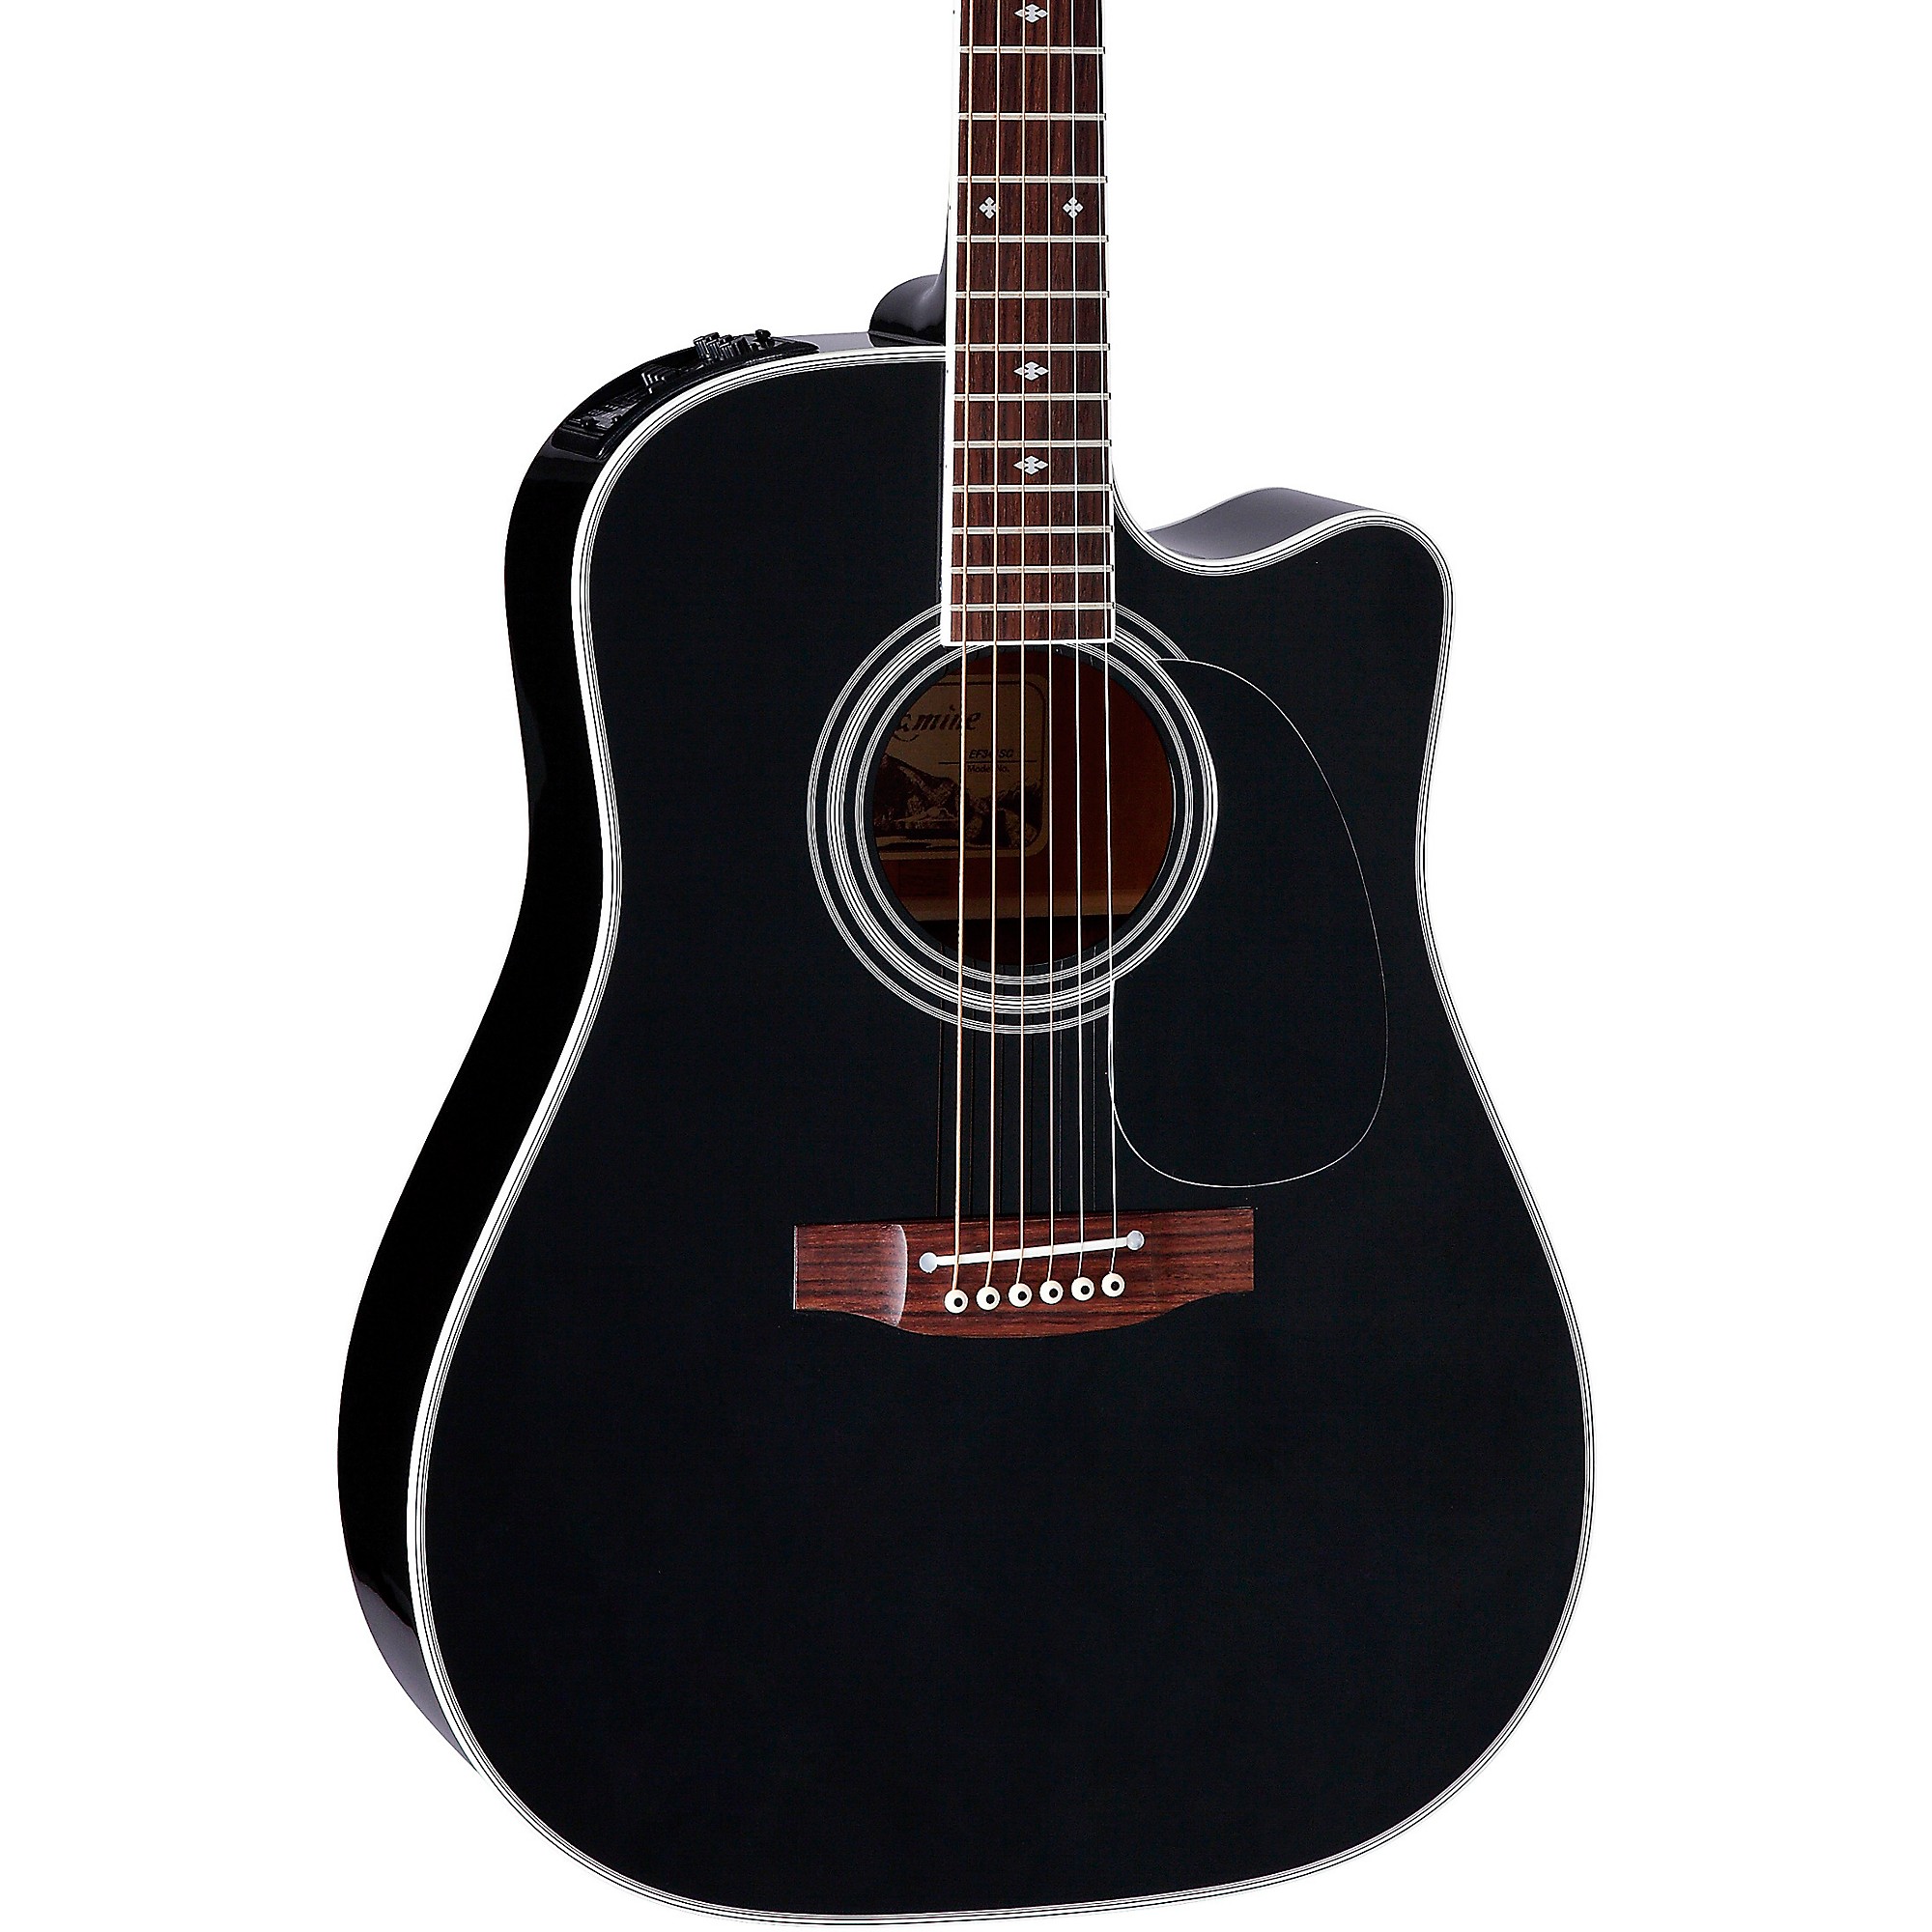 Акустически-электрическая гитара Takamine EF341SC Pro Series Dreadnought Cutaway, черная цена и фото